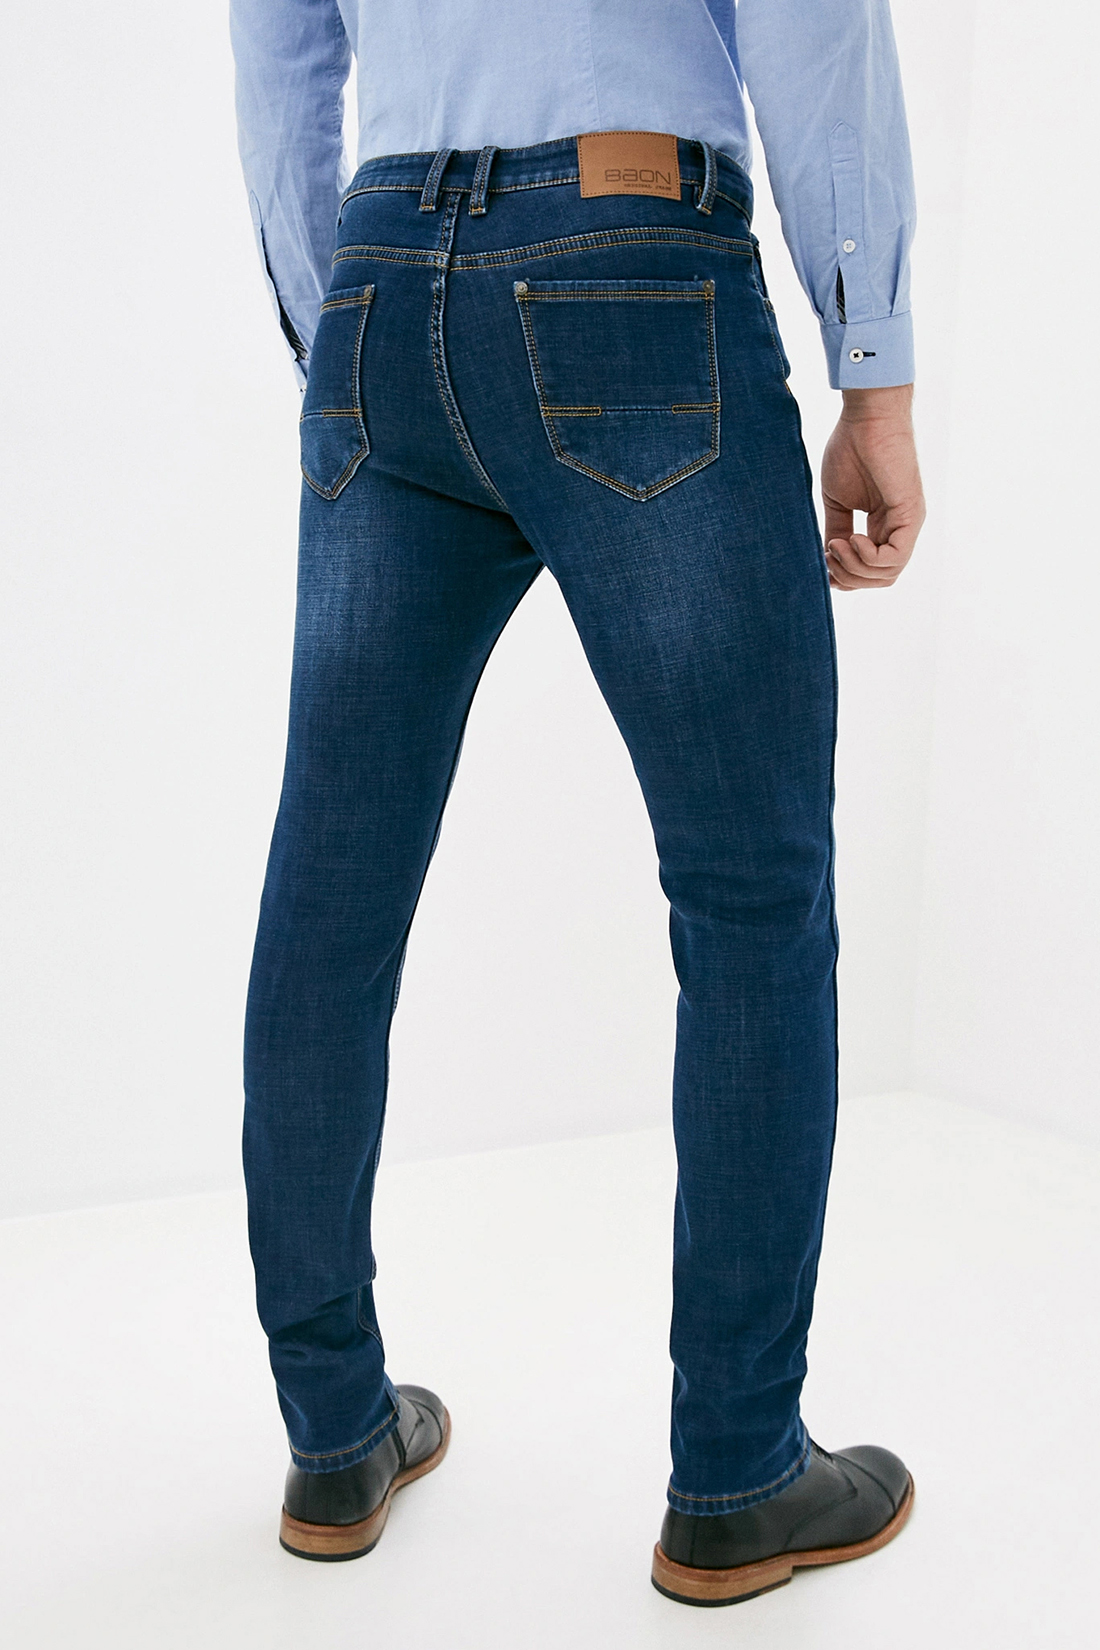 Утеплённые джинсы (арт. baon B800507), размер 30, цвет dark blue denim#синий Утеплённые джинсы (арт. baon B800507) - фото 2